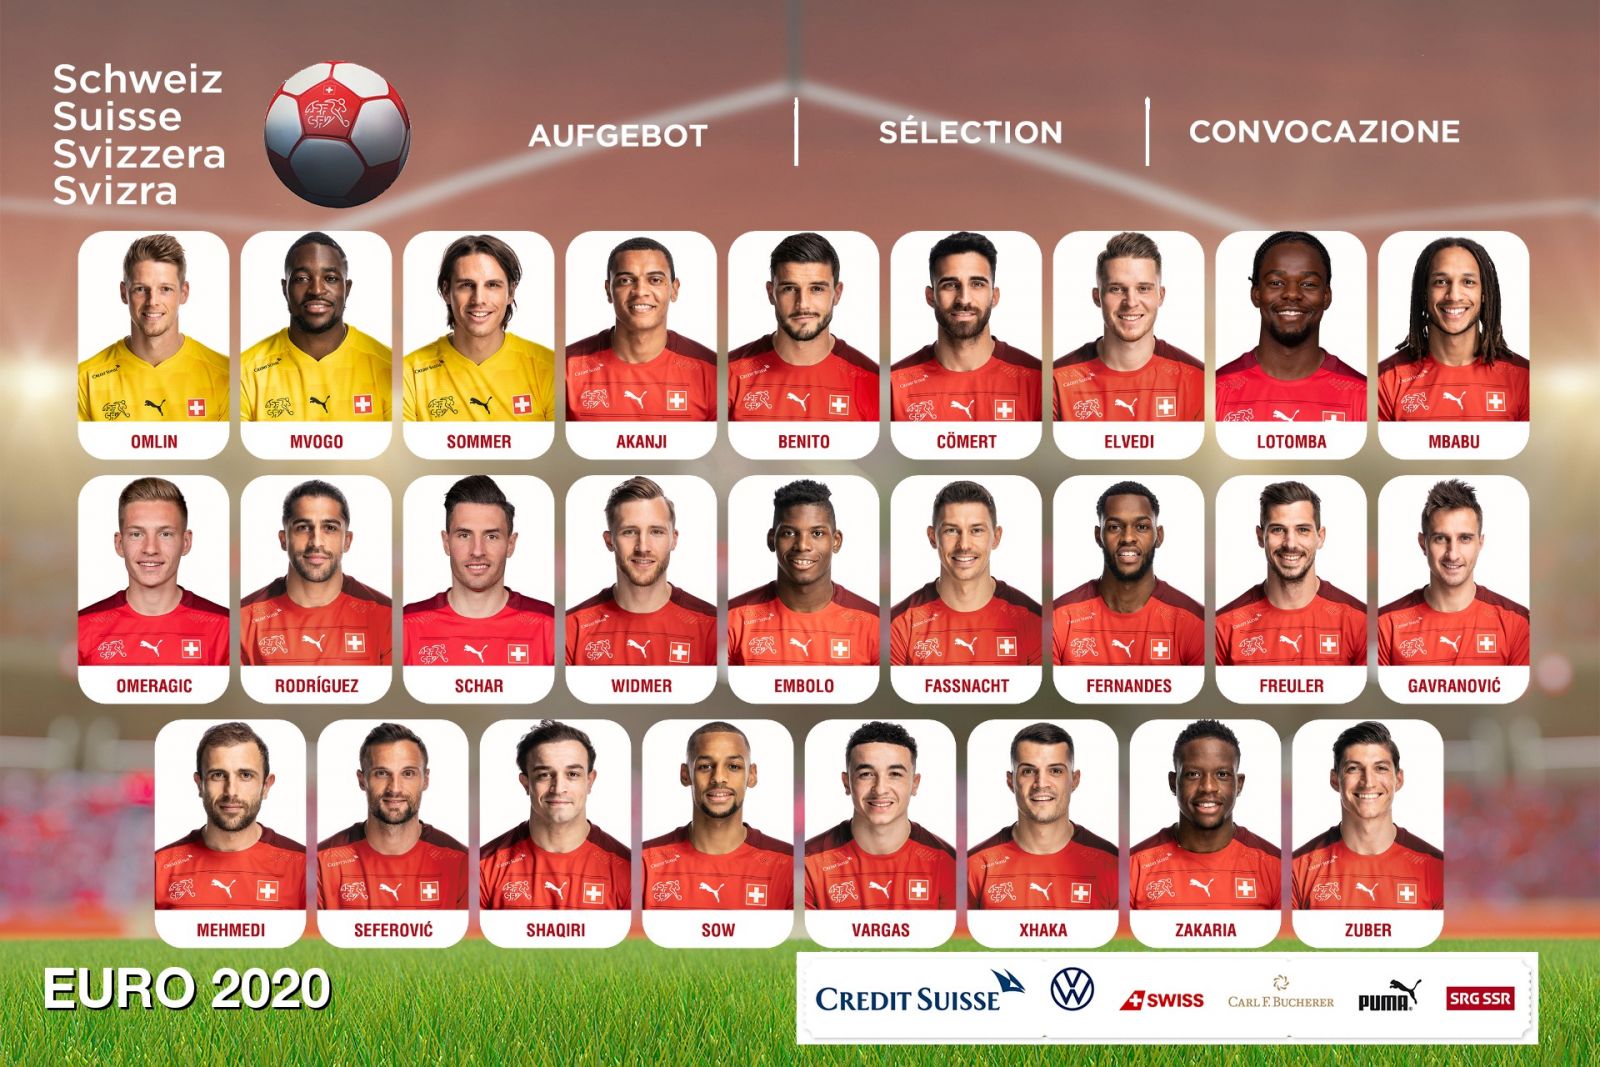 Danh sách cầu thủ được triệu tập vào đội tuyển Thụy Sĩ Euro 2020